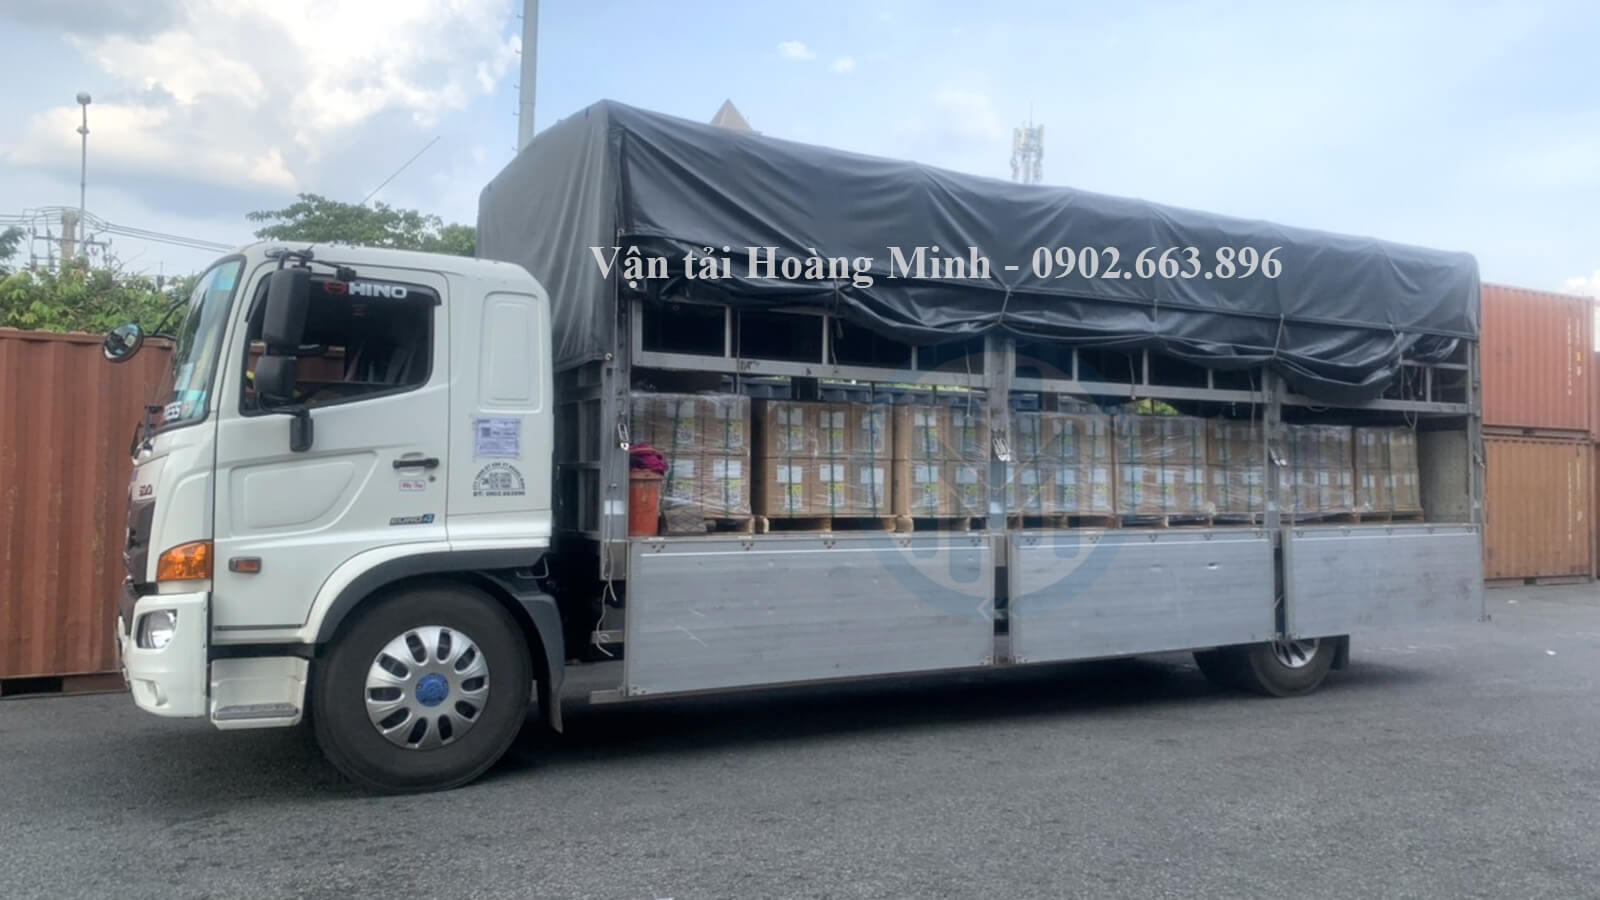 Hình ảnh nhân viên Hoàng Minh vận chuyển hàng tiêu dùng cho khách tại Đồng Tháp.jpg